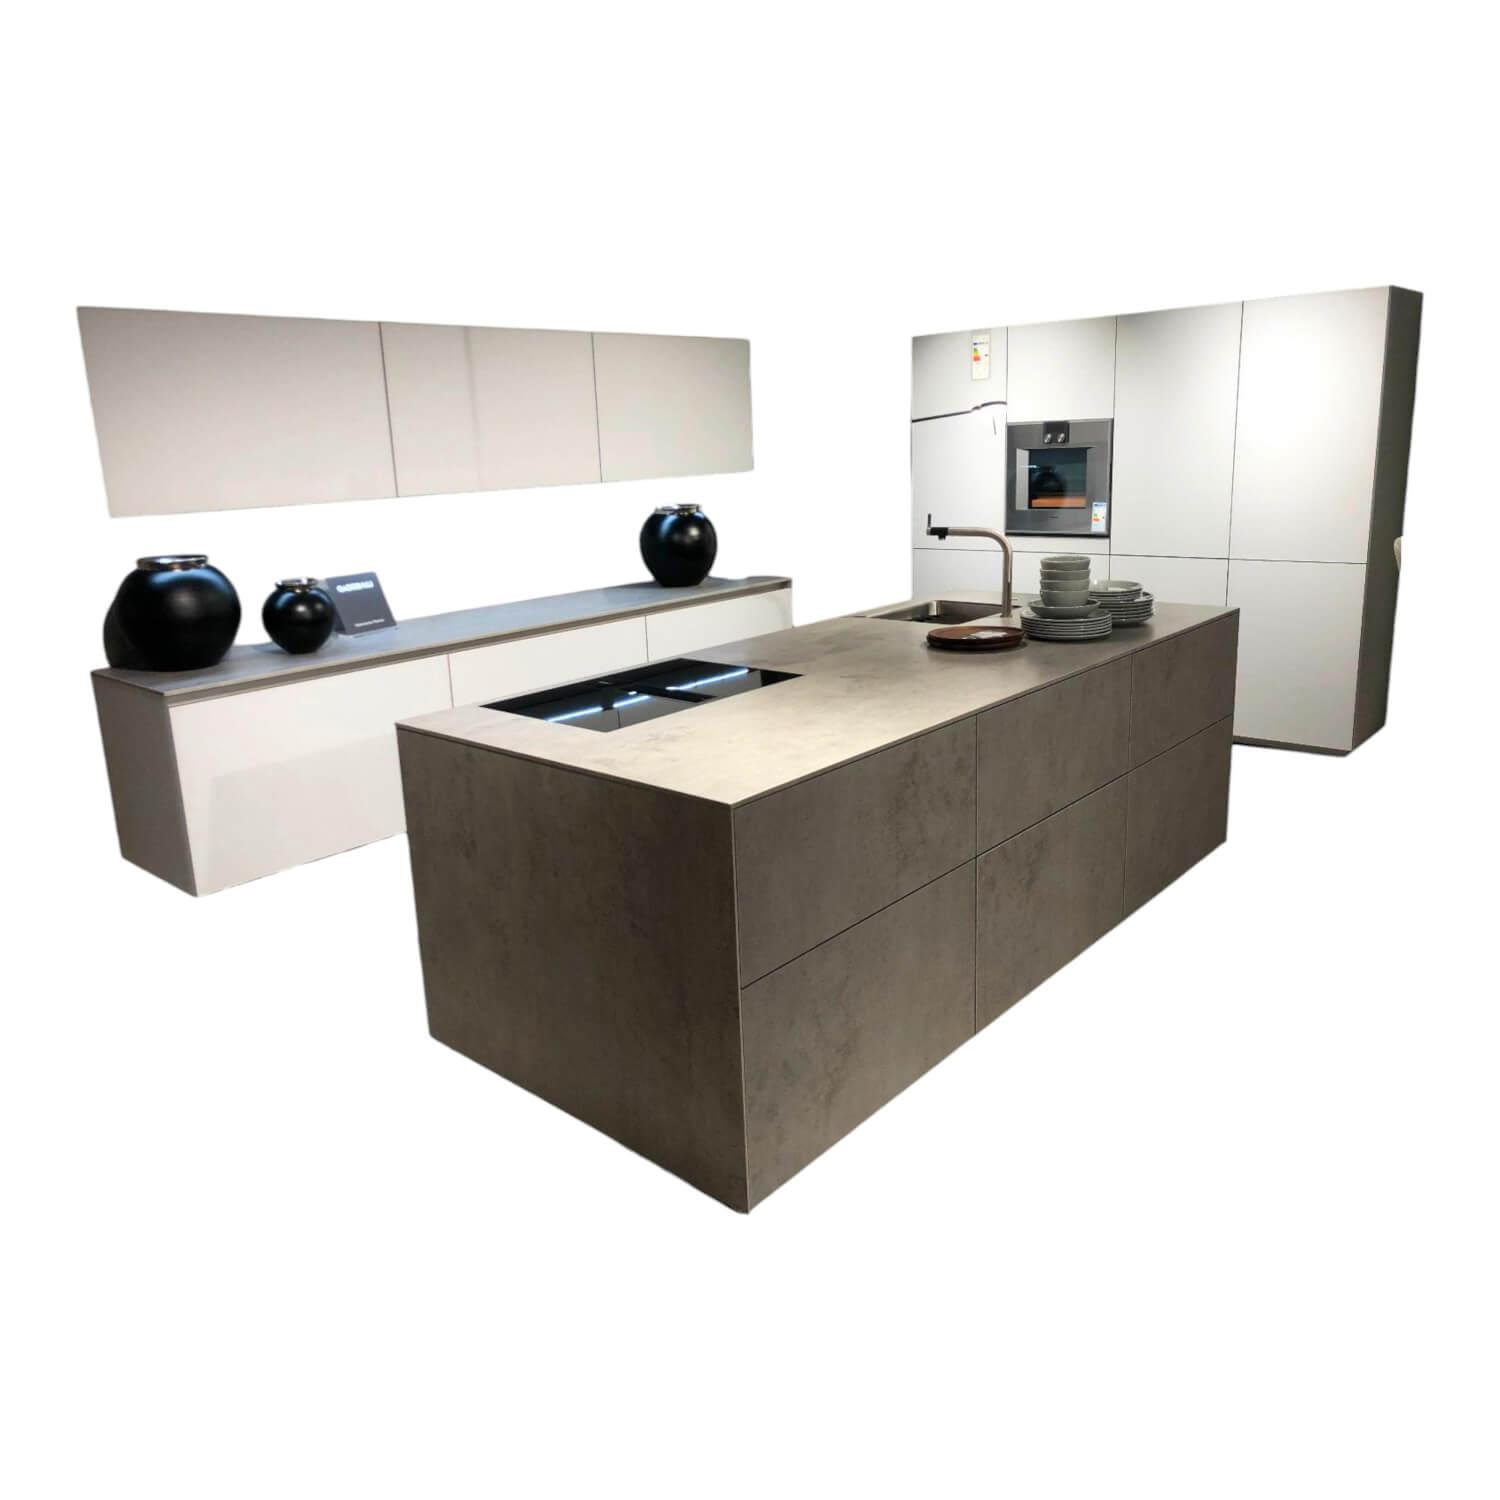 Küche Next NX902 NX950 Glas Matt Kristallgrau Platte Ceramic Beton Grau NS